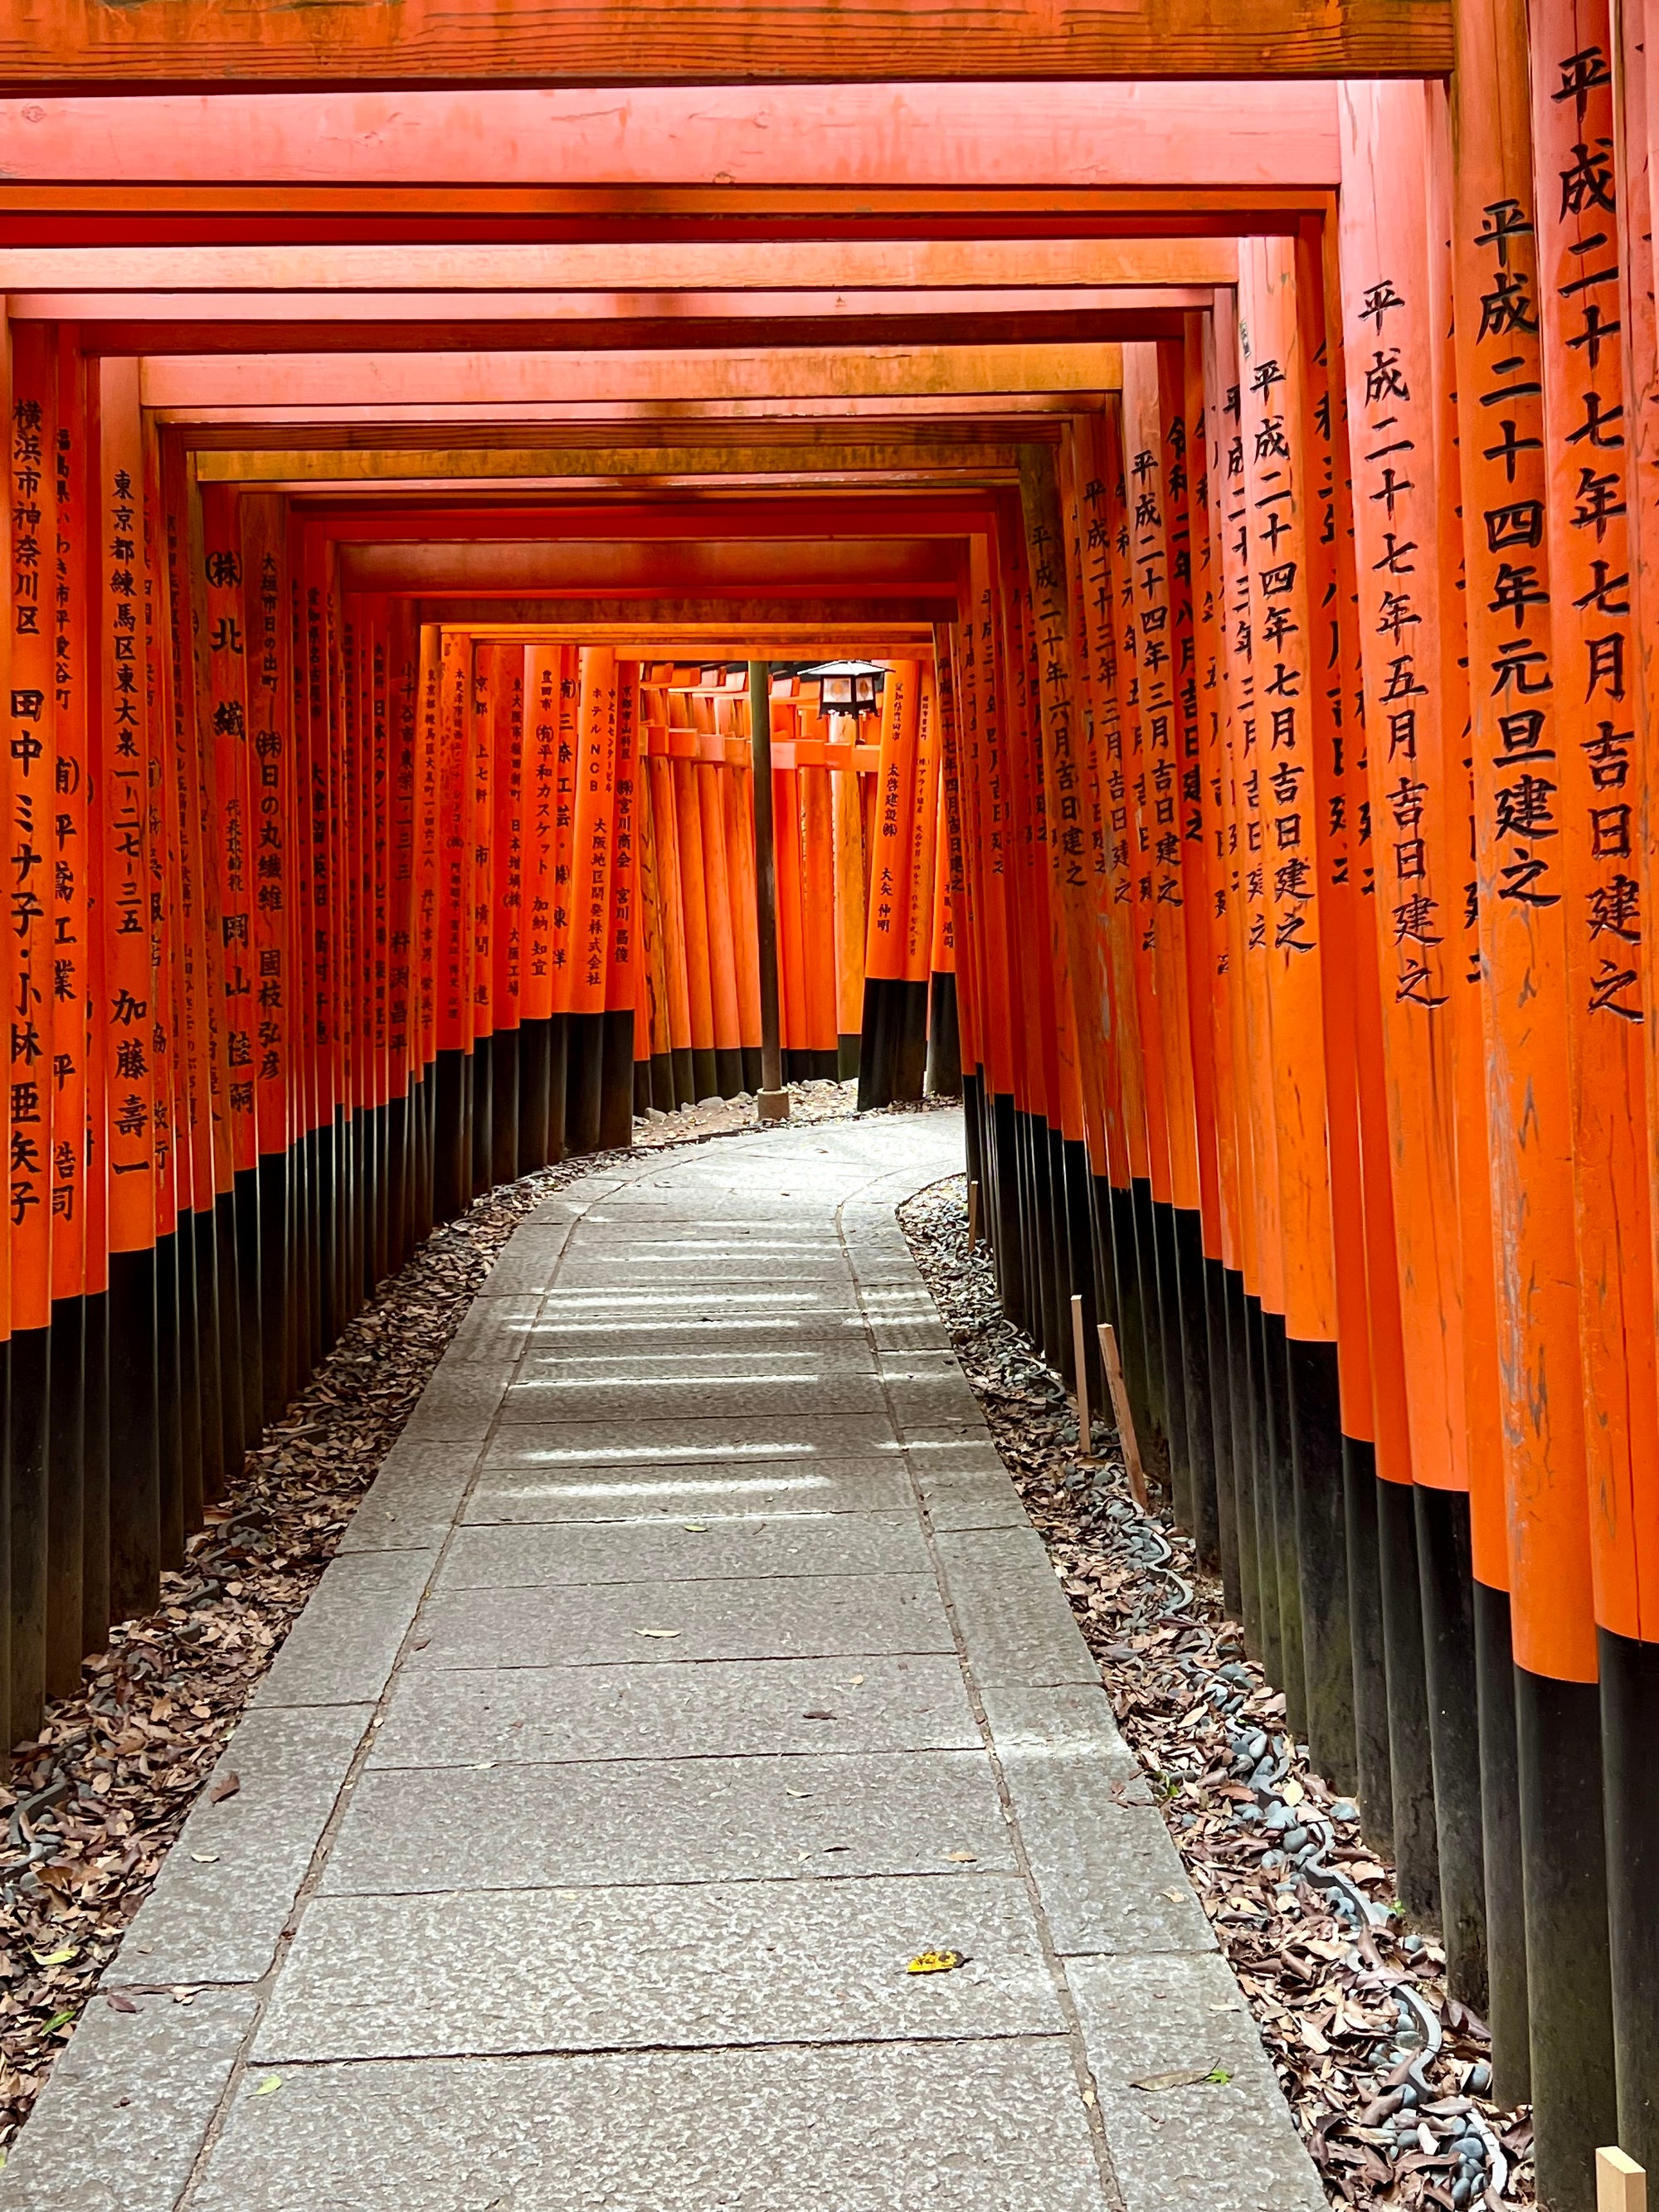 Tamiko In Tokyo | Exploring Nara & Kyoto Vol. 8